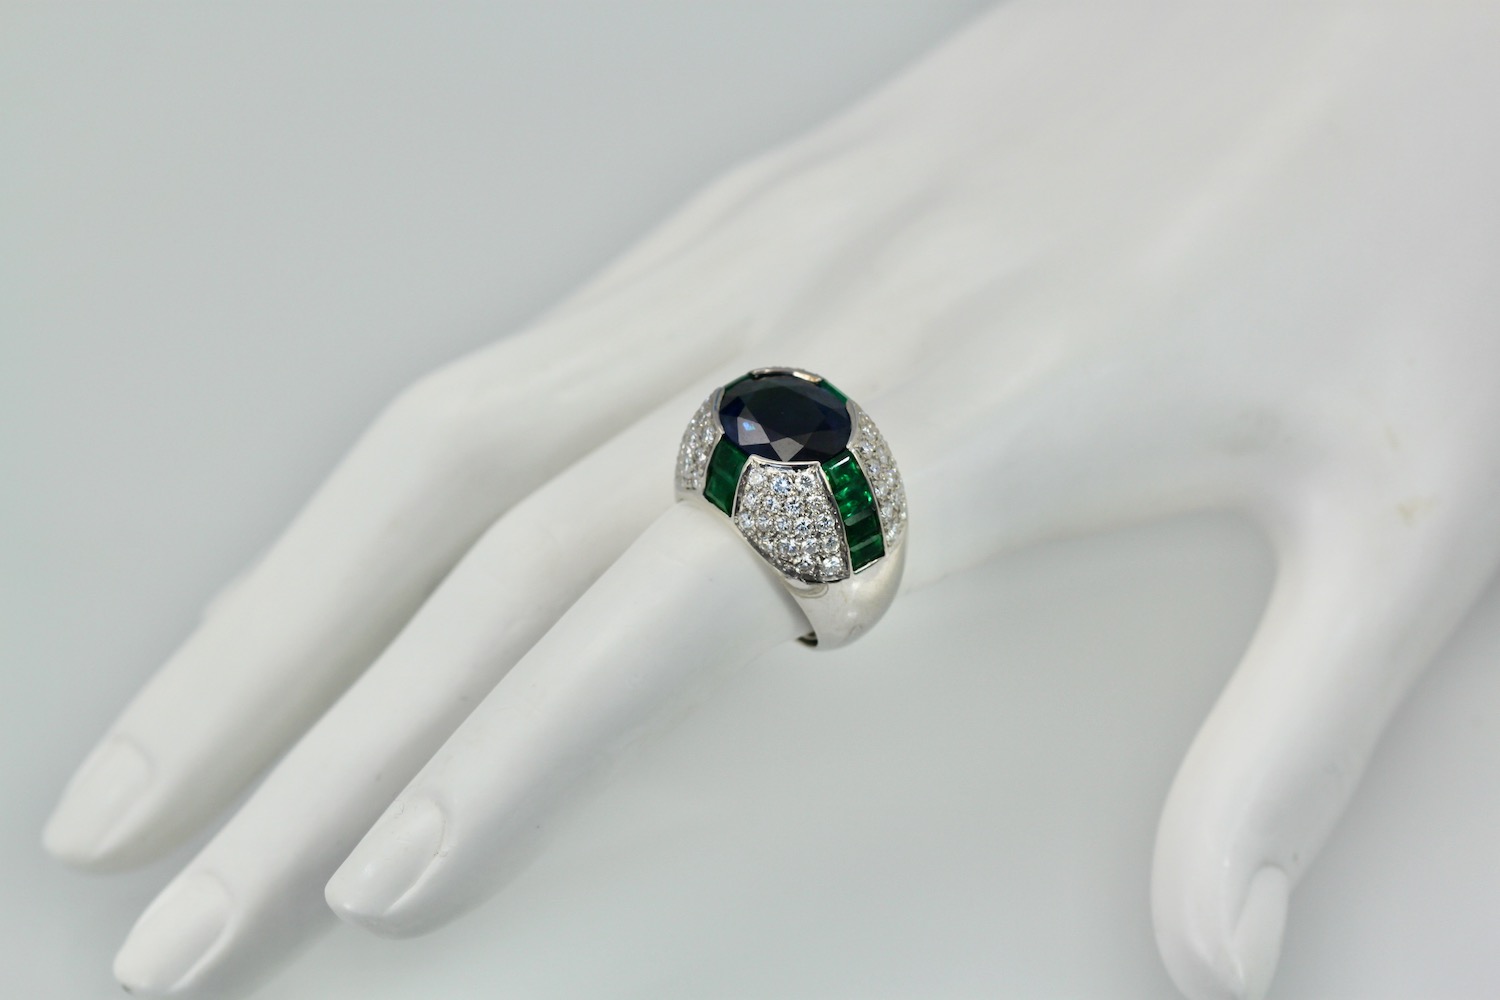 Bulgari Trombino Sapphire Emerald Diamond Ring – model 2